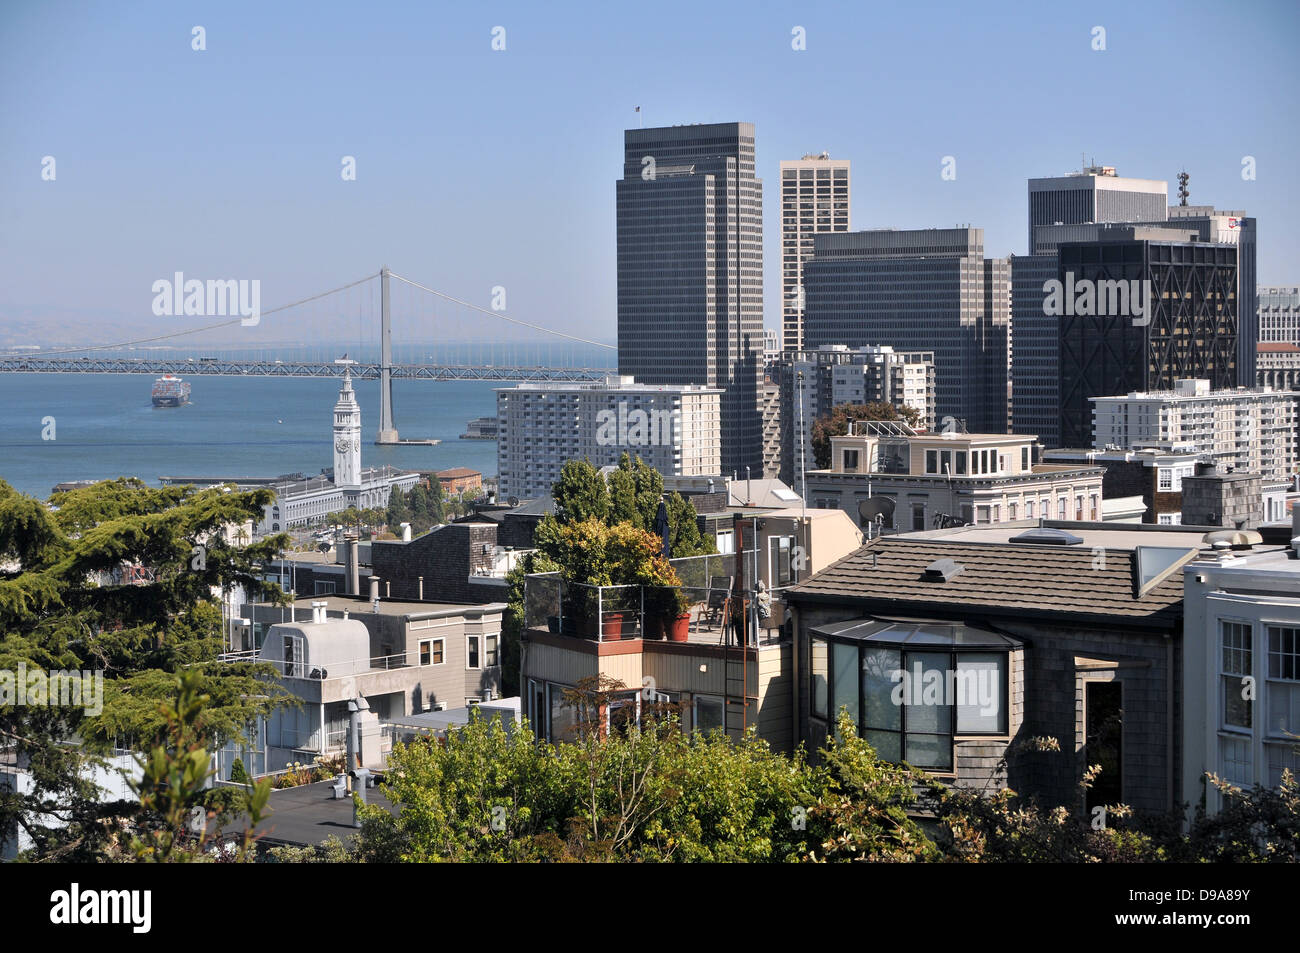 Vue sur le Bay Bridge, Ferry Building et du quartier financier de San Francisco depuis le haut de Telegraph Hill un jour d'été Banque D'Images